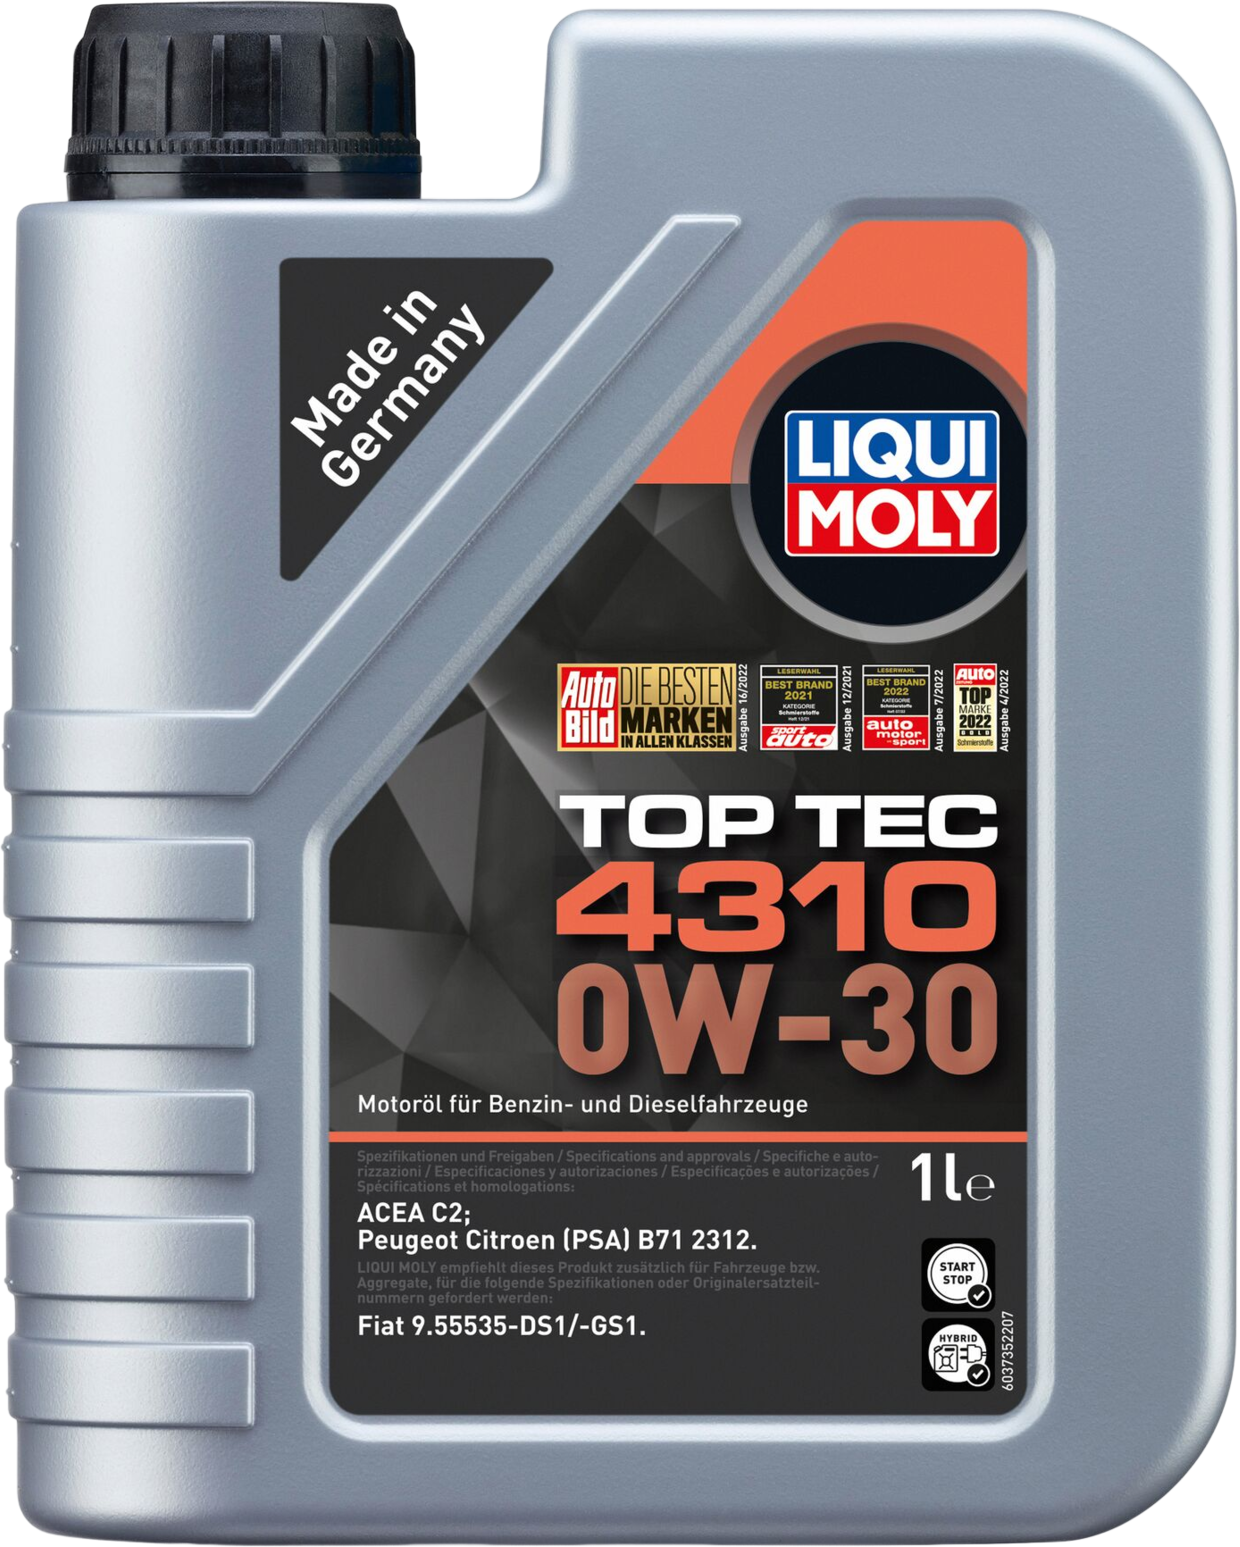 Liqui Moly Top Tec 4310 0W-30, 6 x 1 lt detail 2